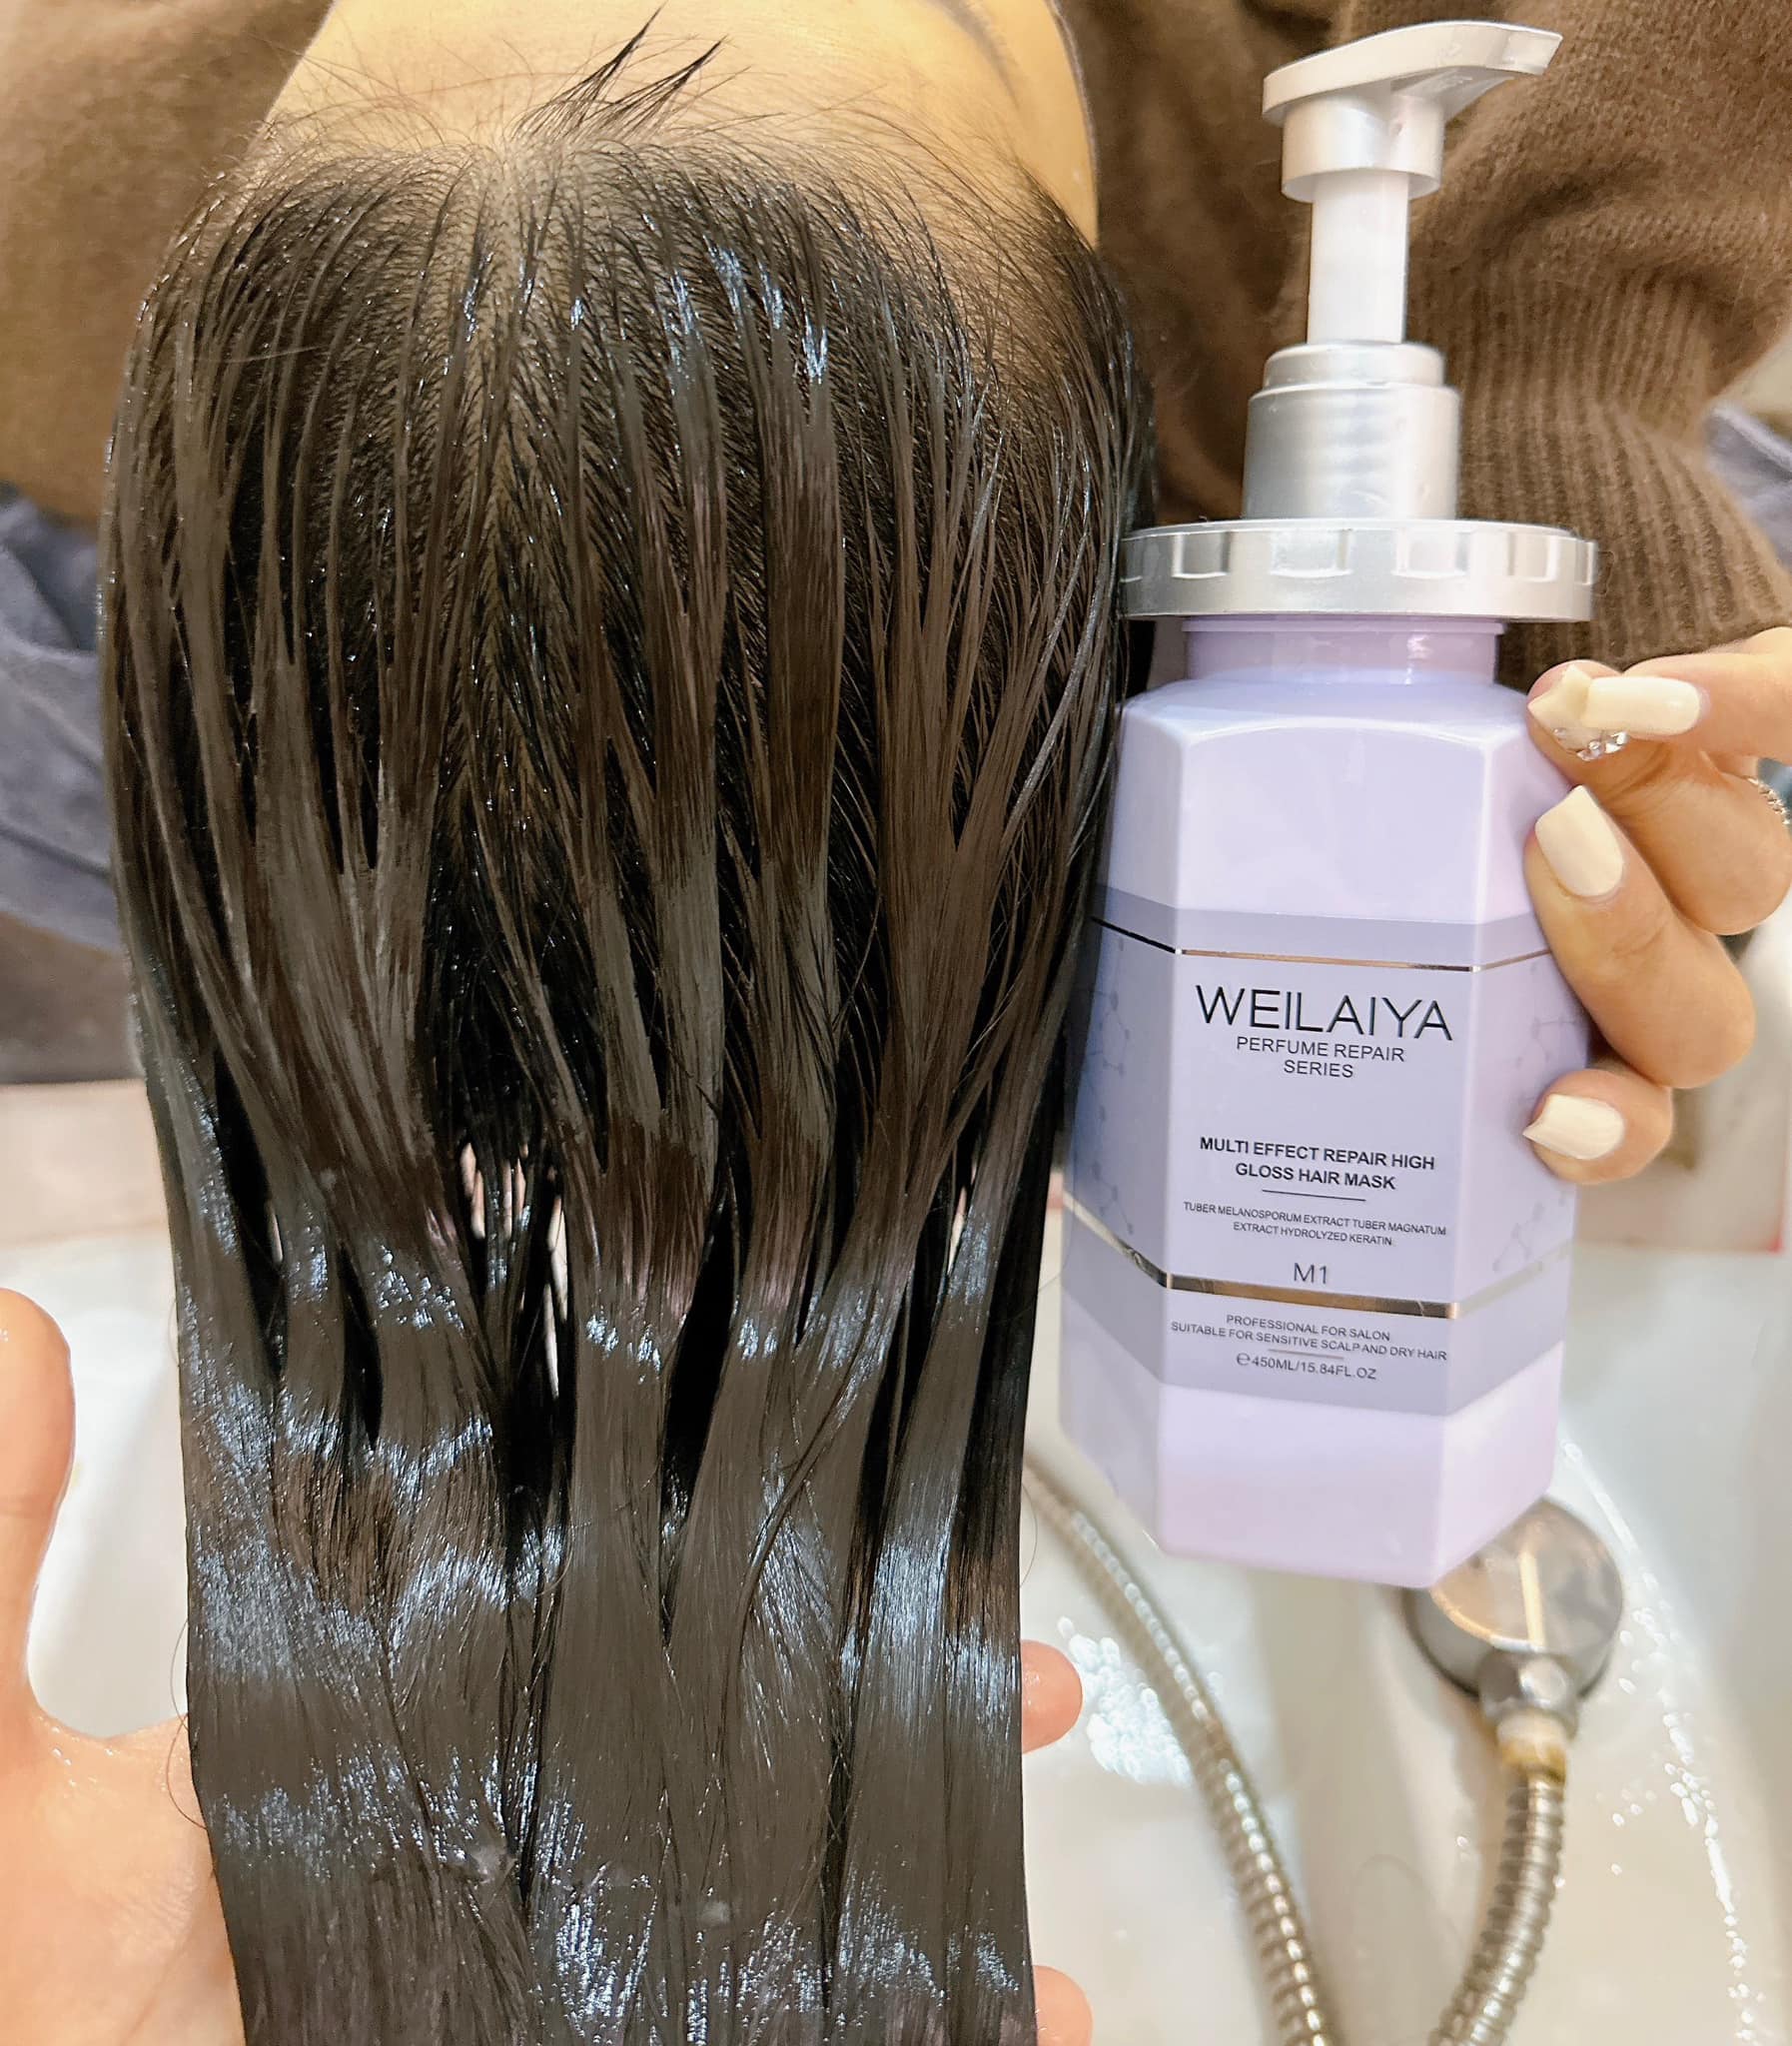  Dầu hấp tóc Weilaiya giúp tóc được đầy đủ dưỡng chất cần thiết